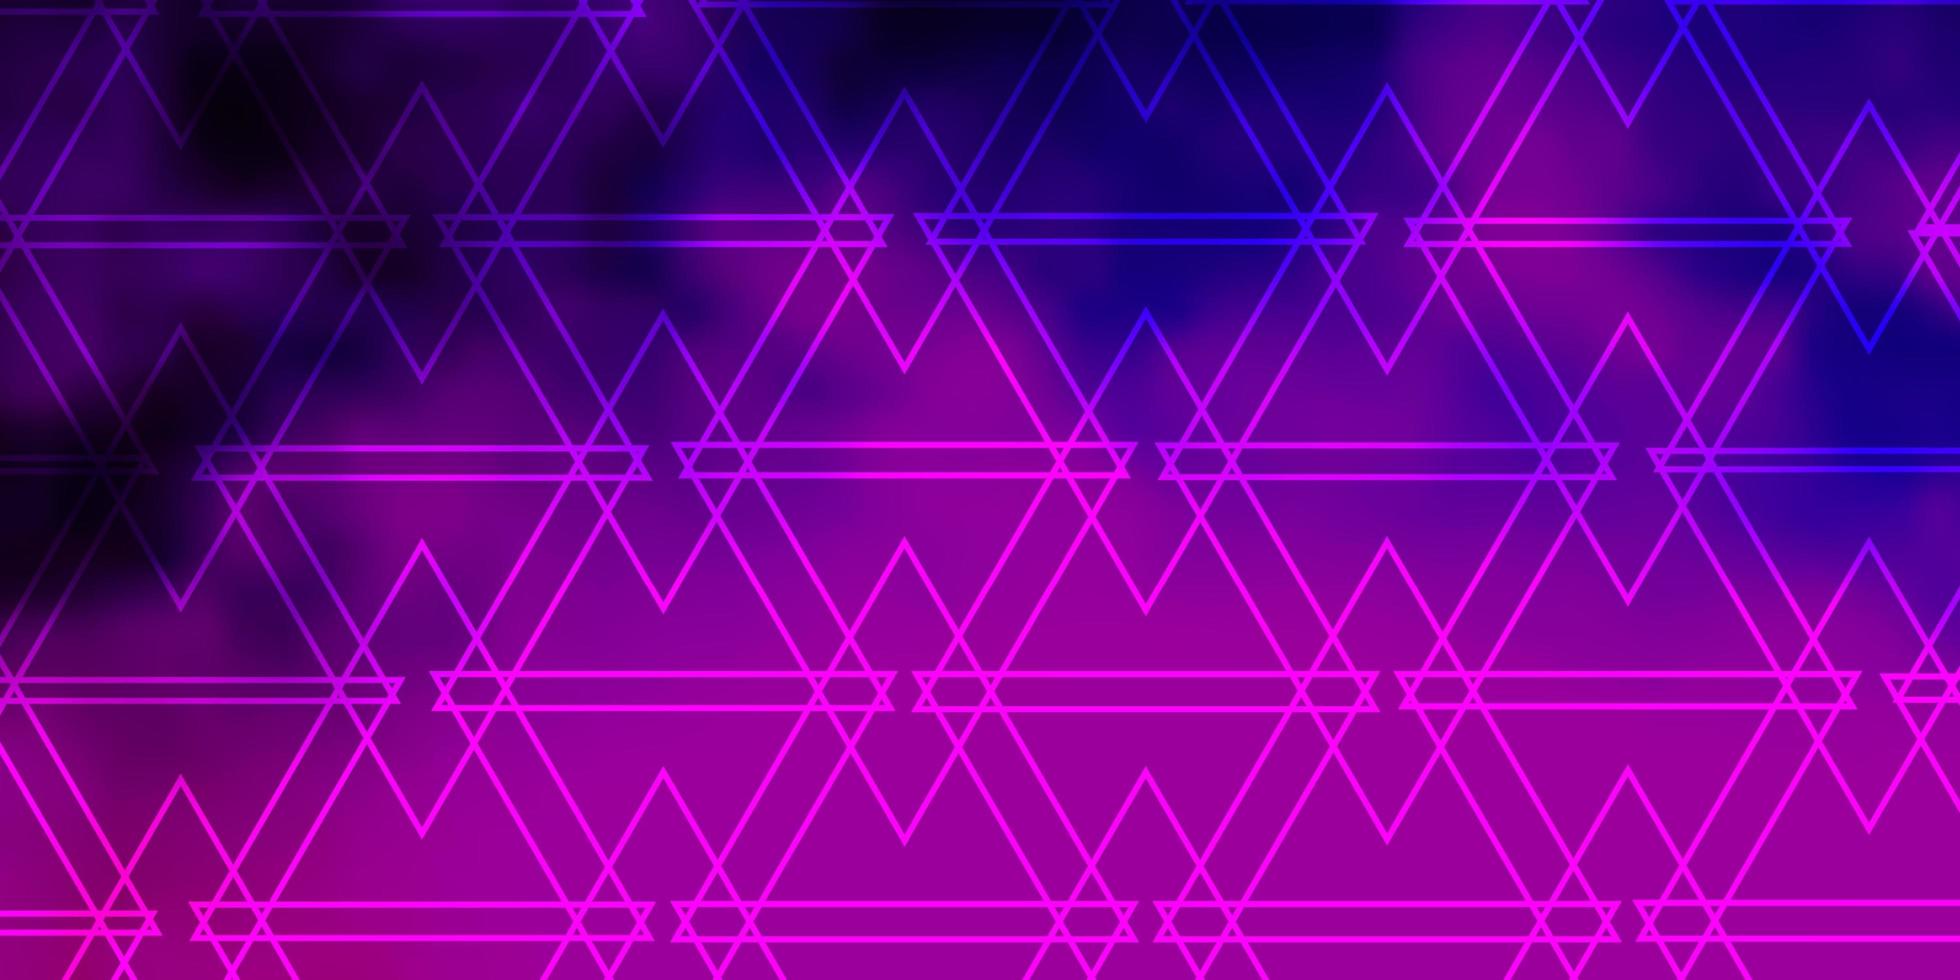 Telón de fondo de vector rosa púrpura claro con líneas triángulos Ilustración de degradado abstracto con patrón de triángulos para sitios web